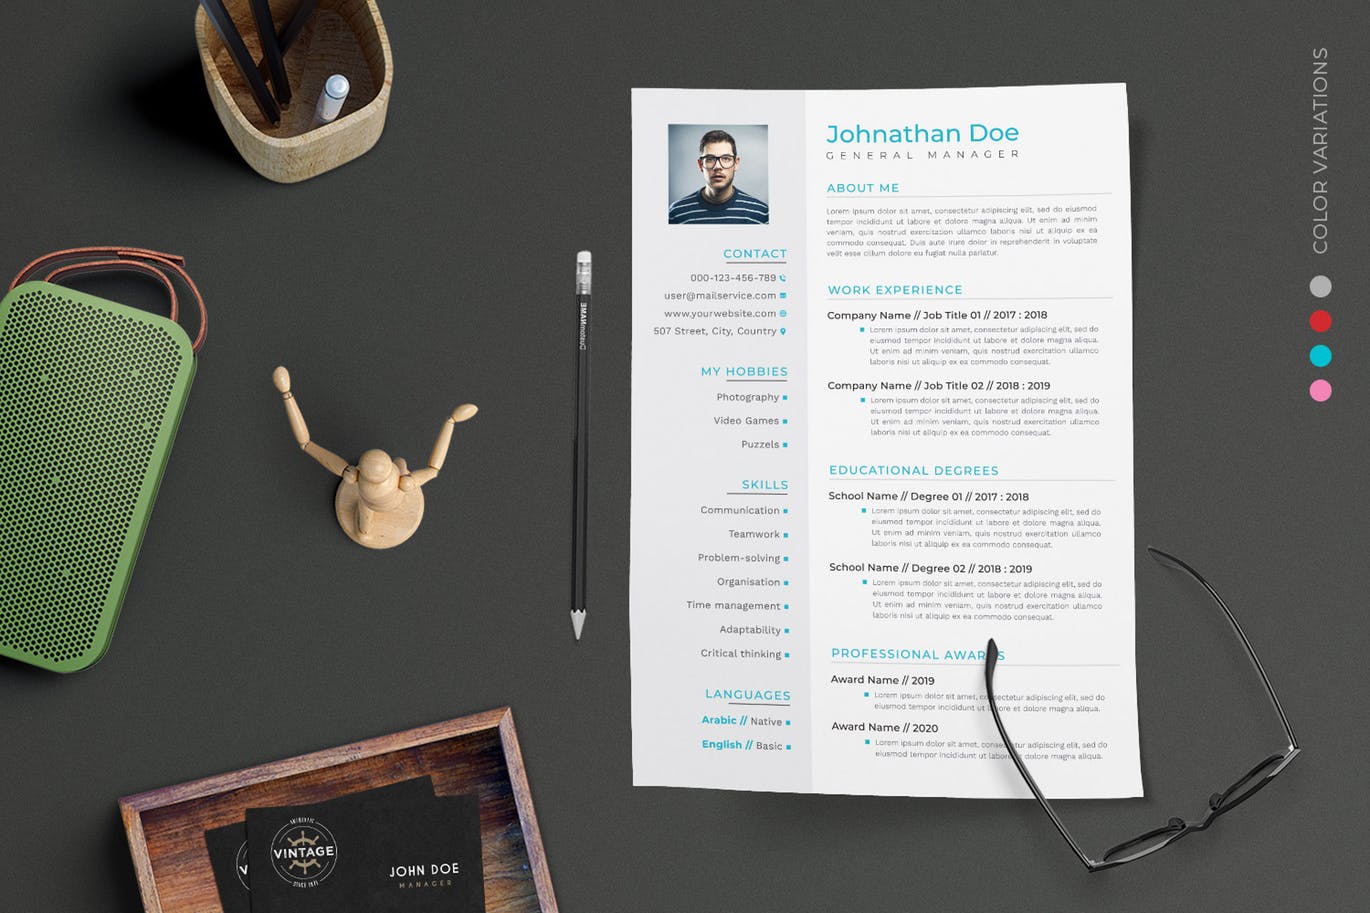 项目管理经理个人电子蚂蚁素材精选简历模板 CV Resume插图